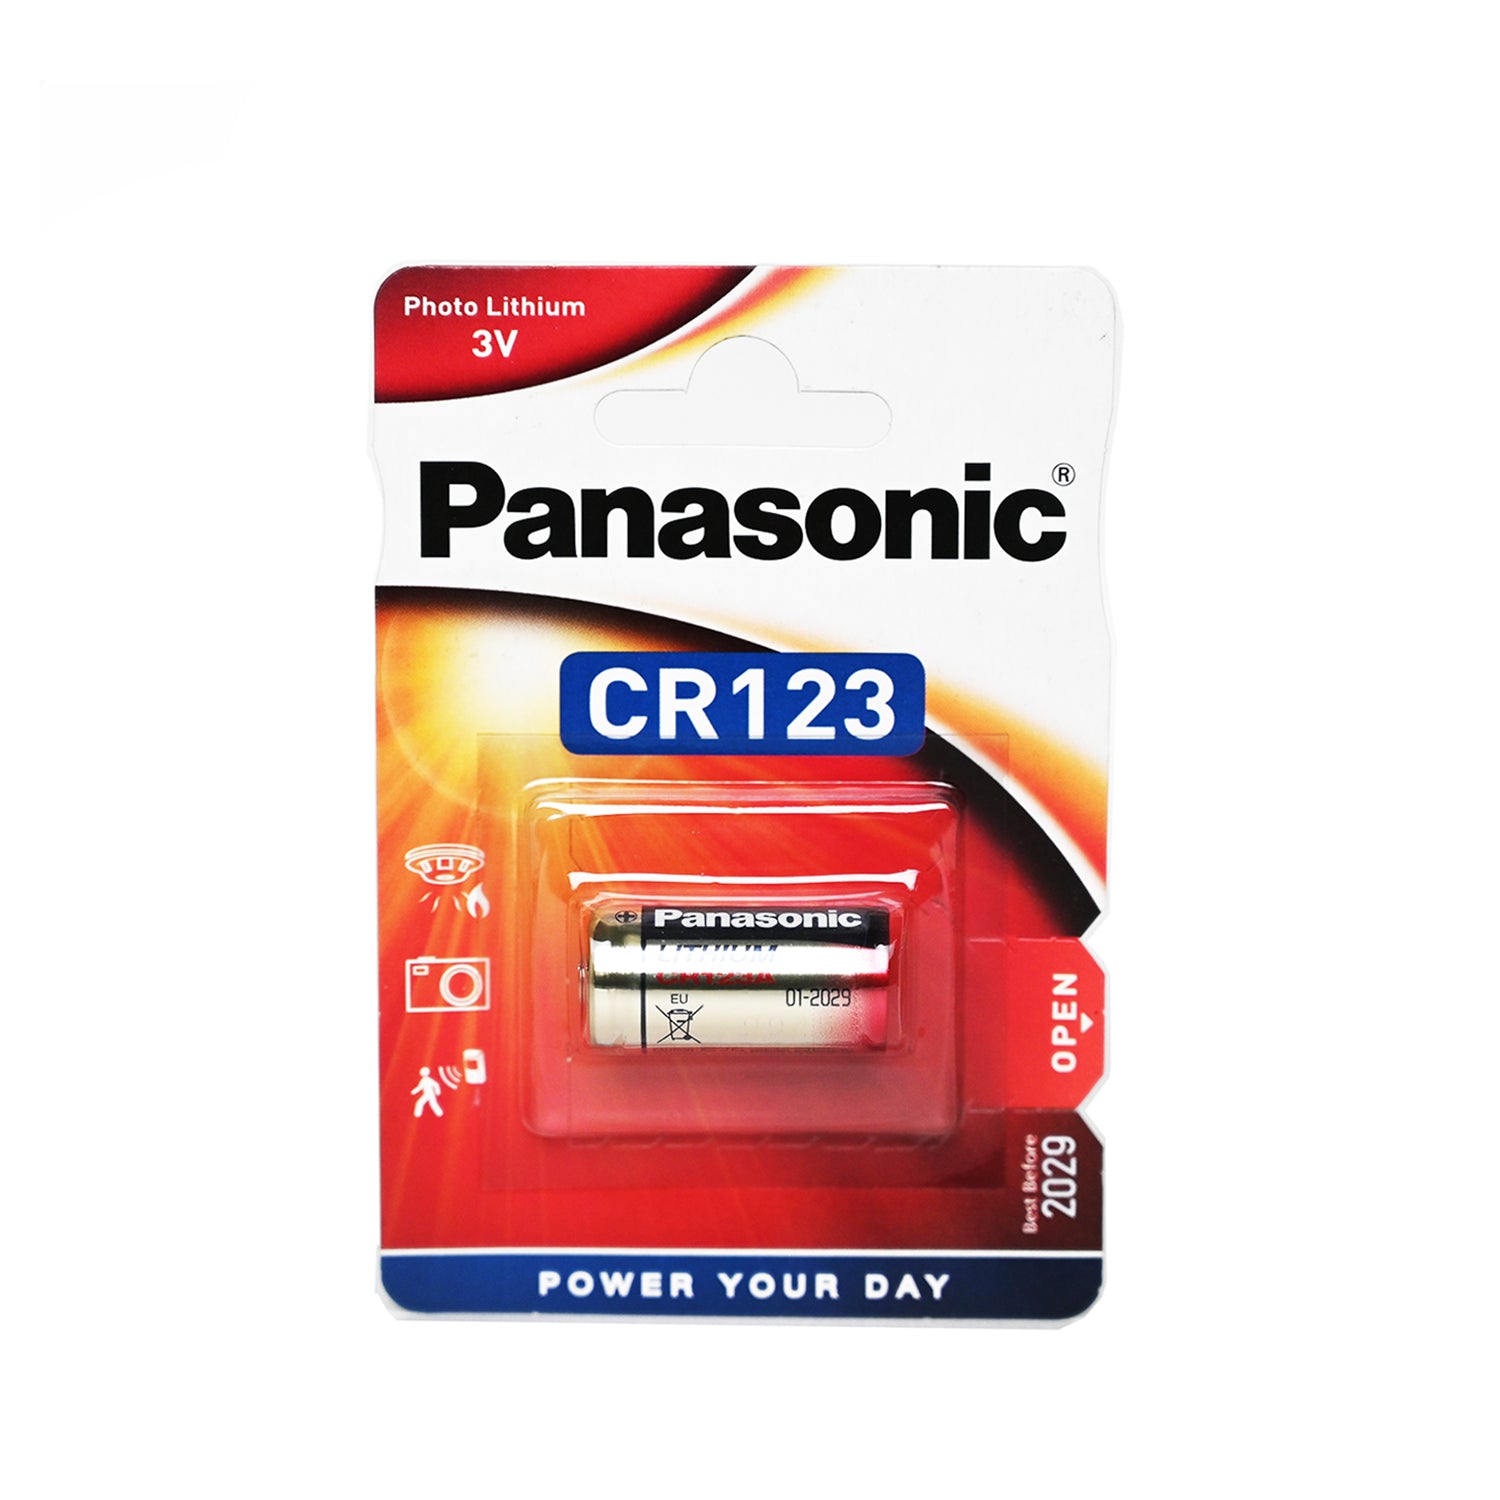 Panasonic Battery Lithium CR123